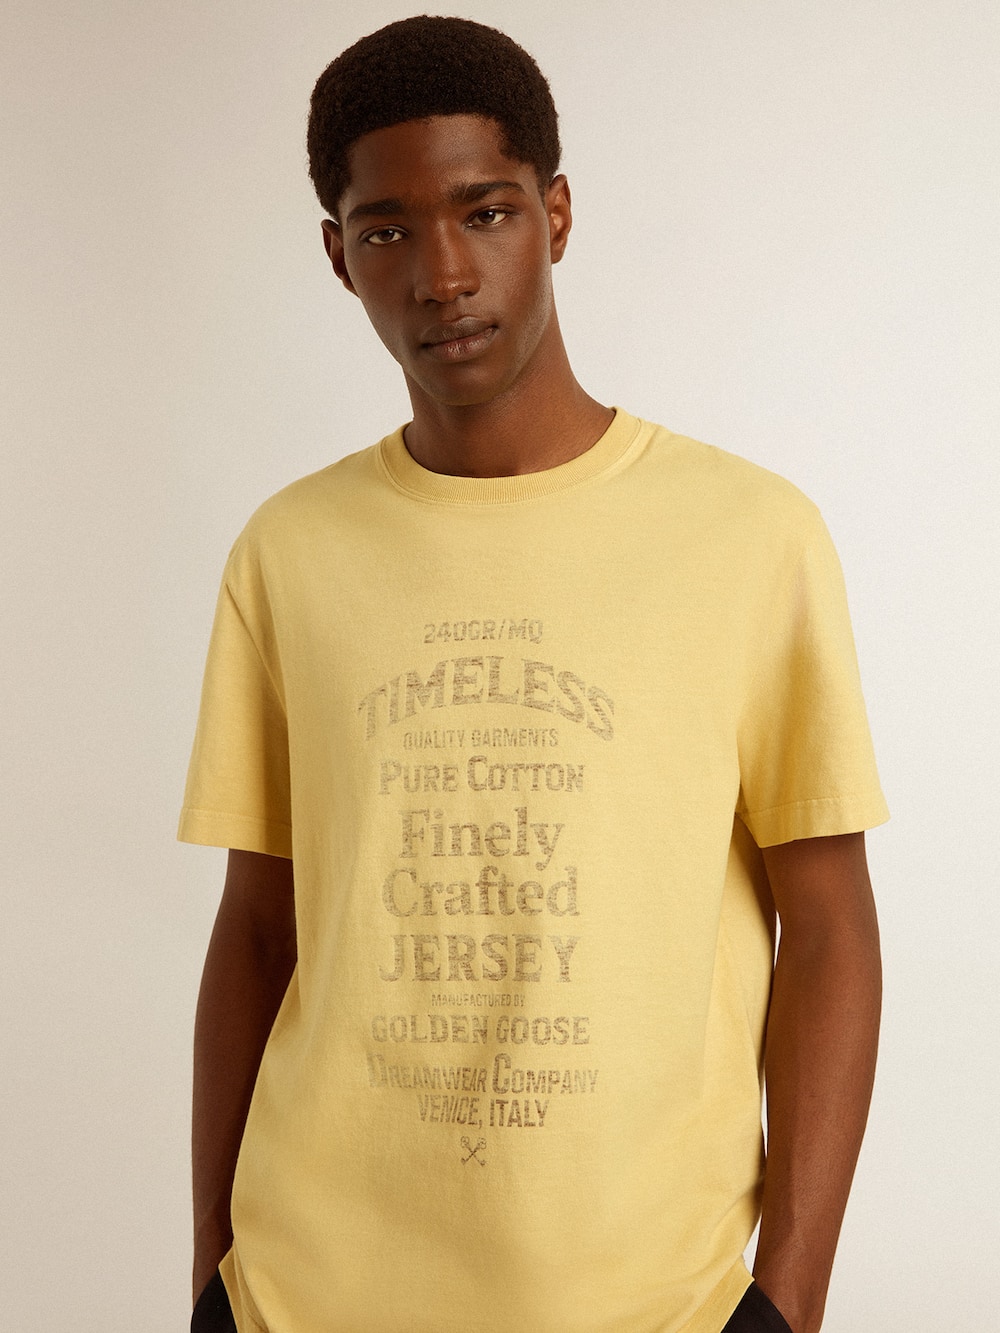 Golden Goose - T-Shirt da uomo in cotone color giallo pallido e scritta sbiadita in 